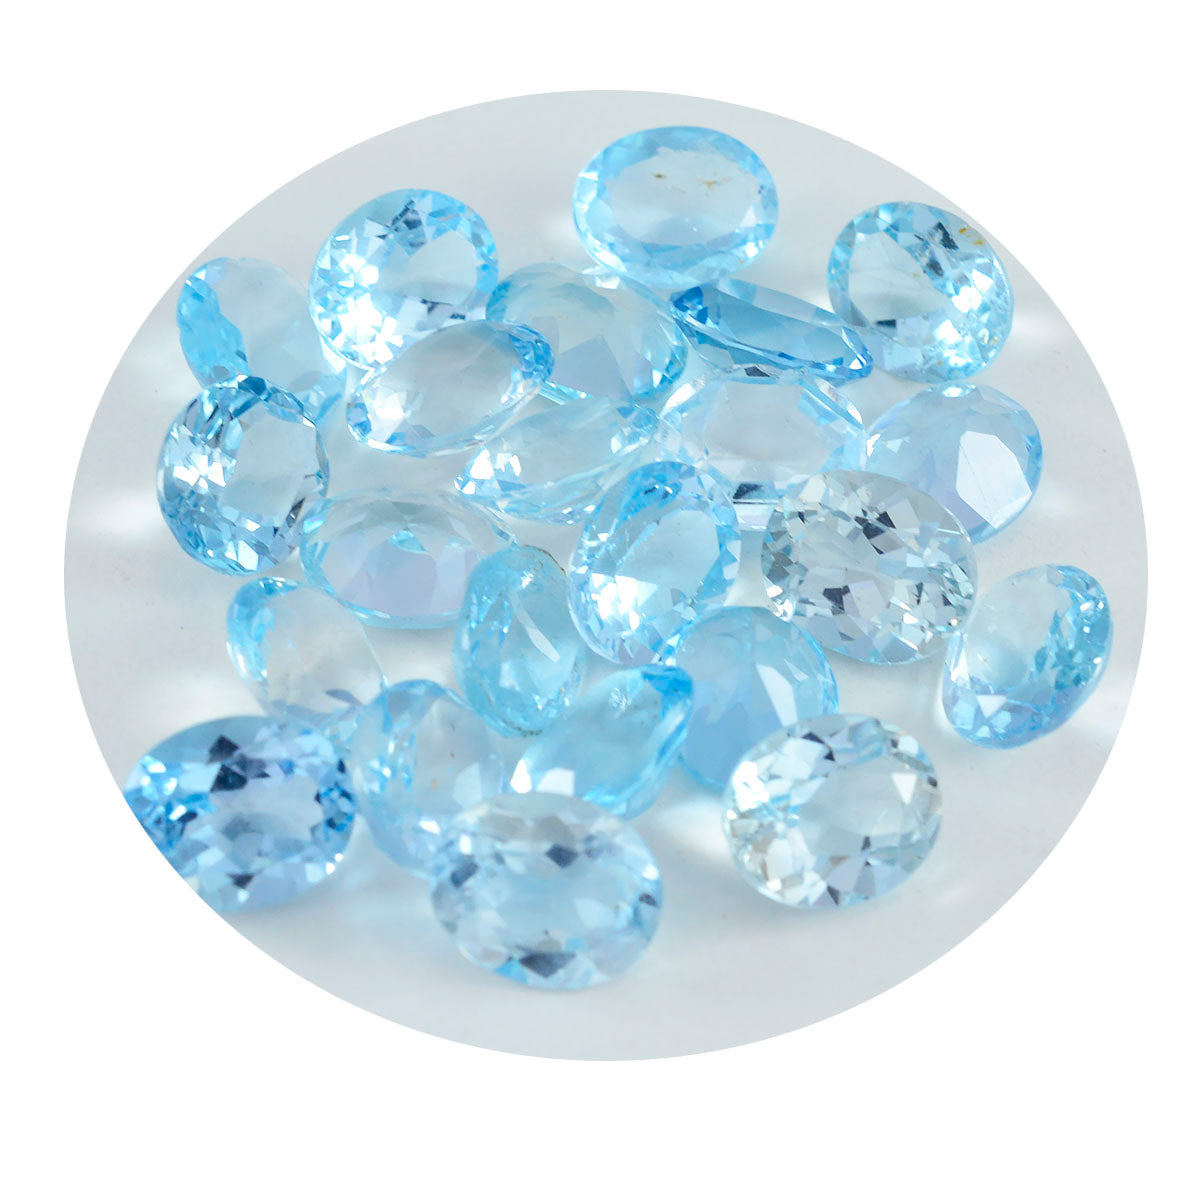 Riyogems 1 pieza de topacio azul natural facetado de 0.236 x 0.315 in, forma ovalada, piedra preciosa de calidad A1